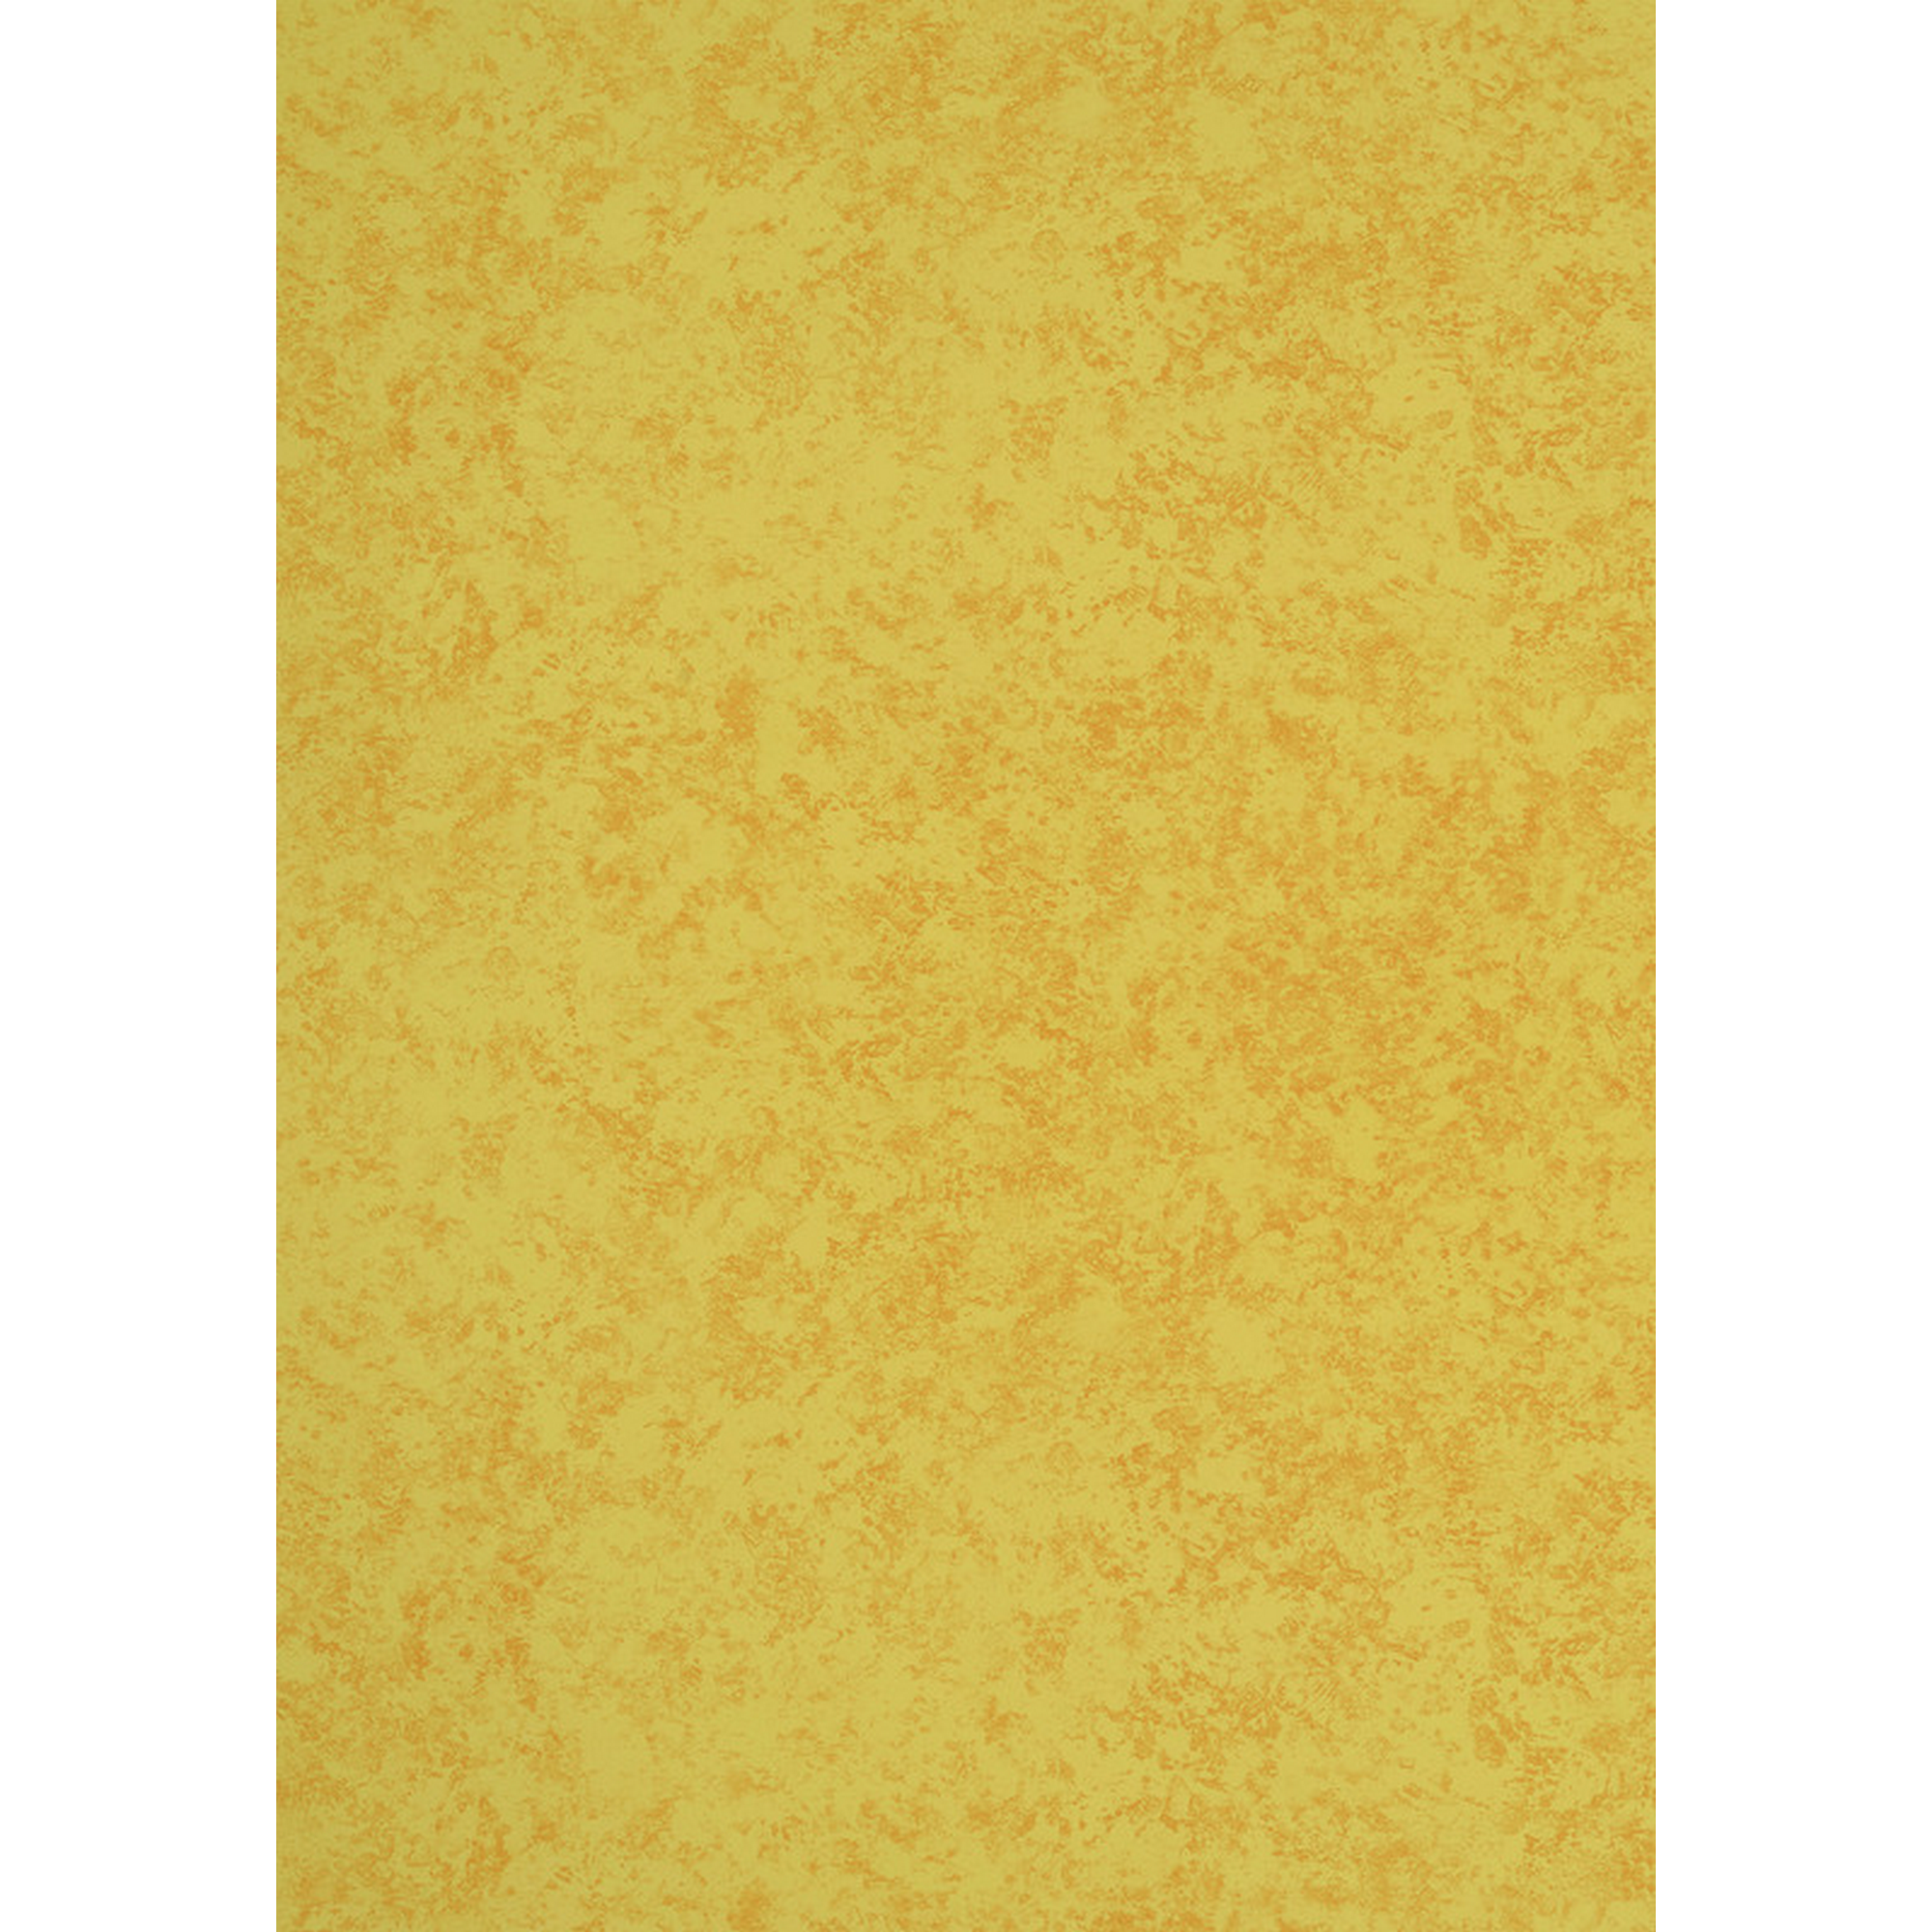 Tischbelag 'Modern Line' vanillefarben, Breite 110 cm + product picture